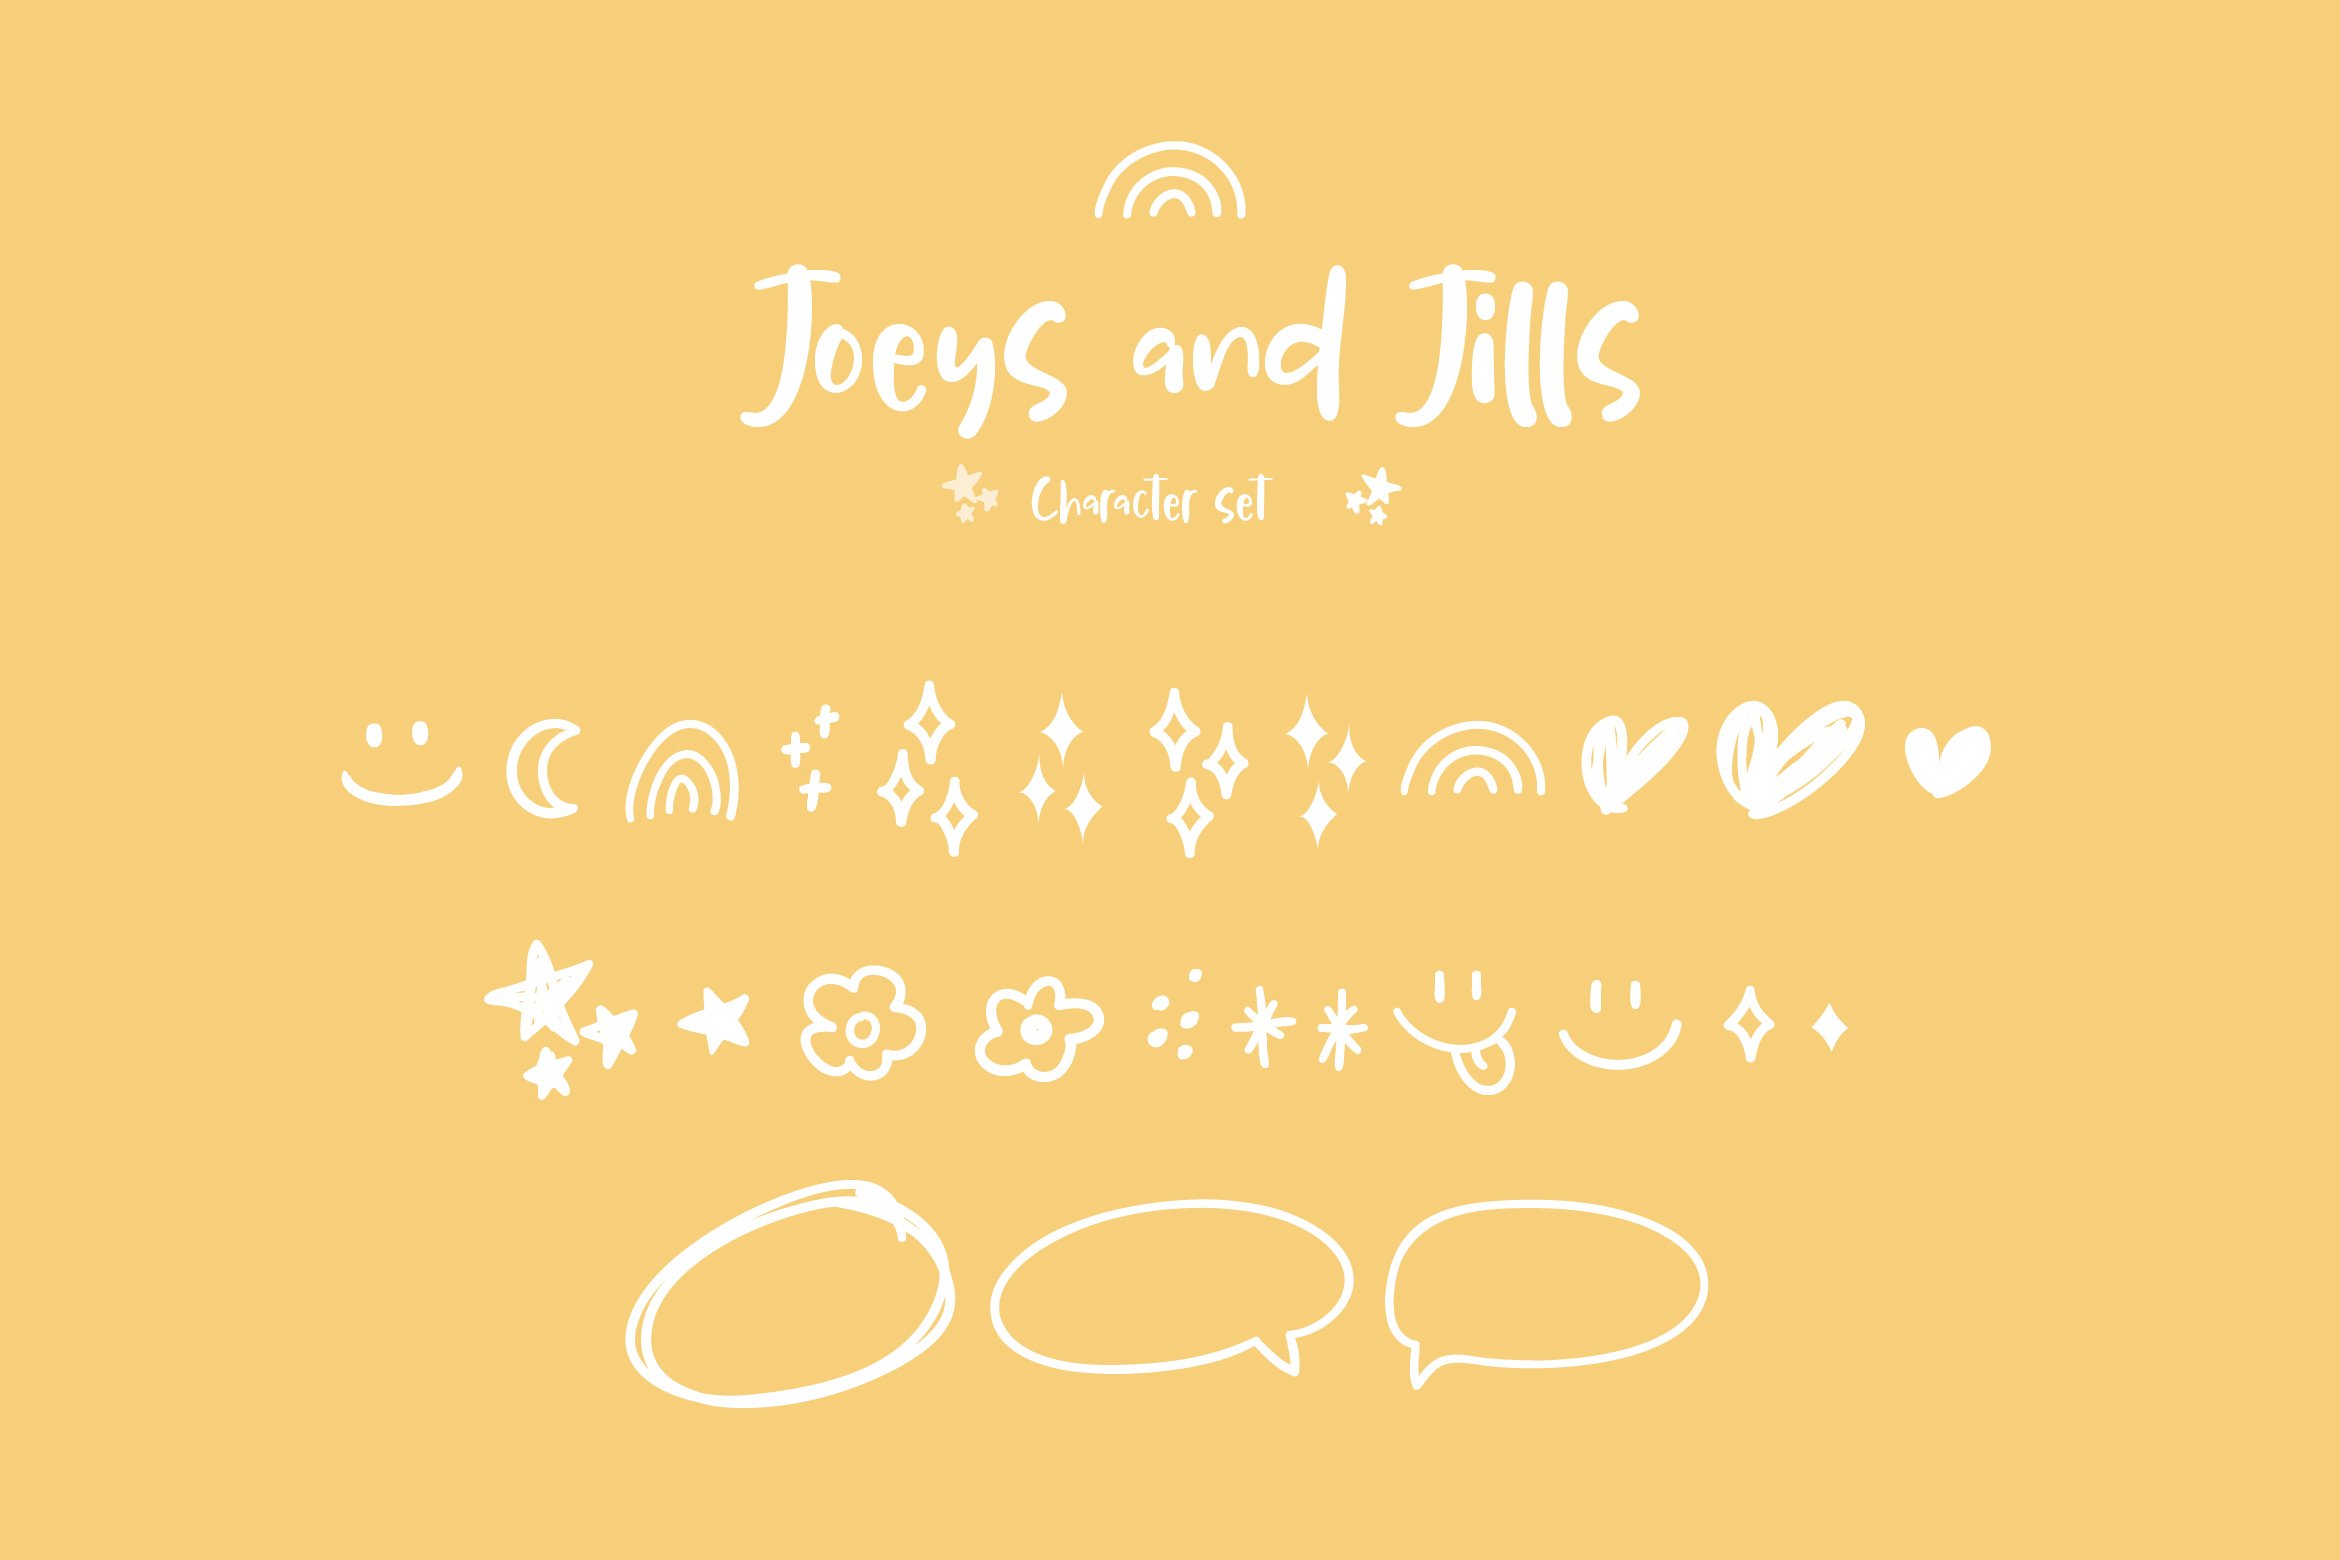 joeys and jills 09 716